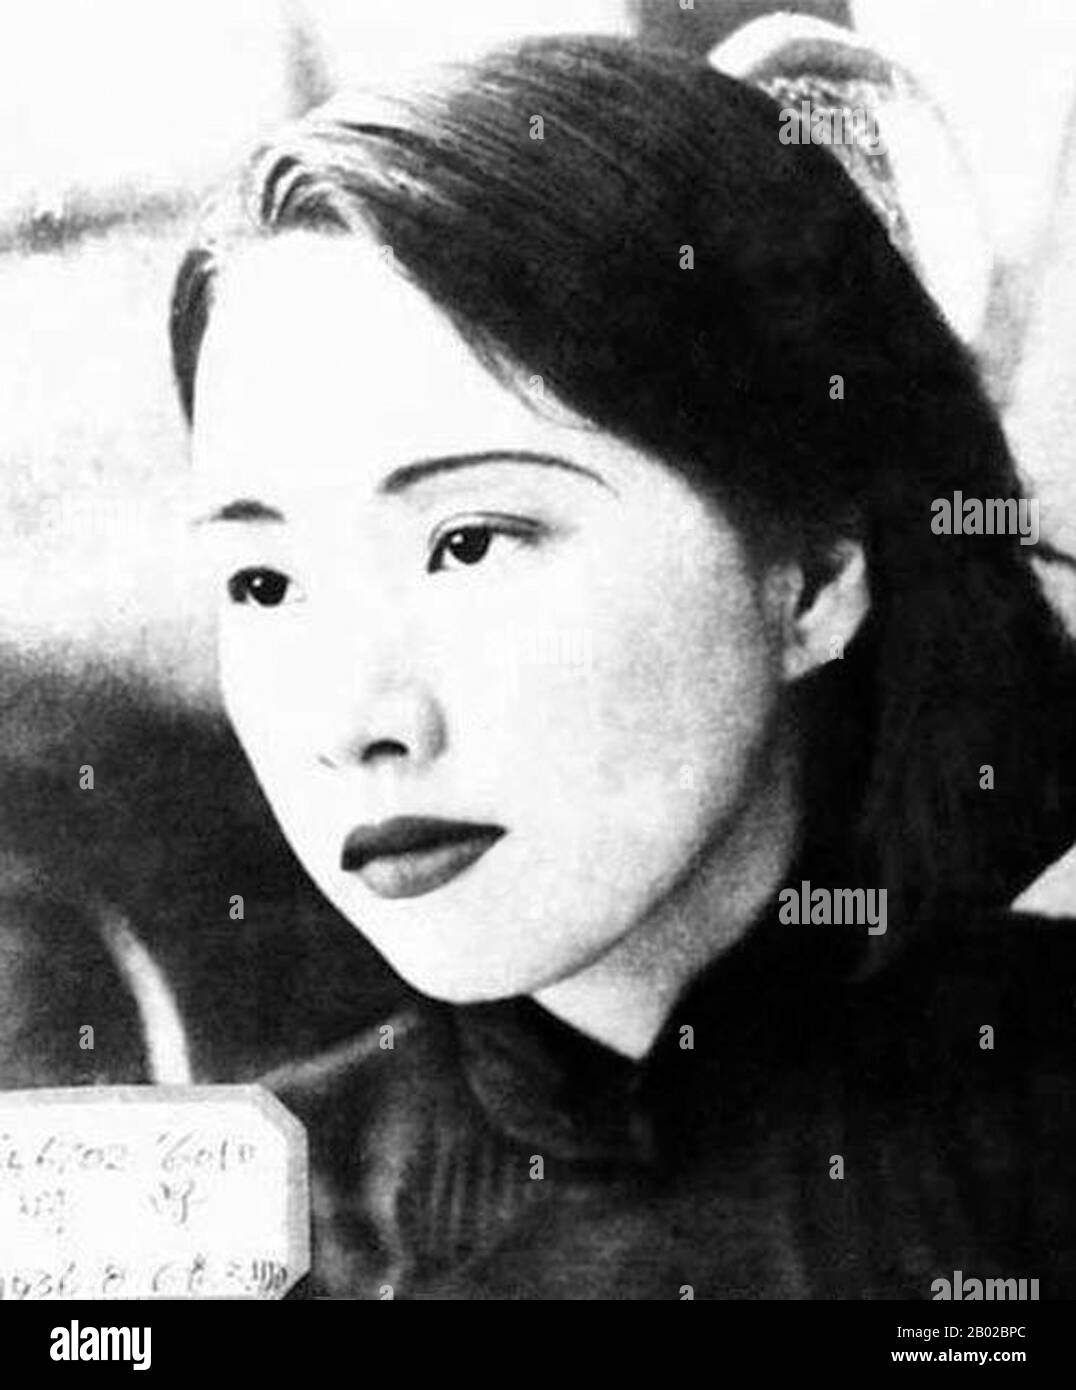 Jiang Qing (Chiang ch'ing, mars 1914 – 14 mai 1991) était le pseudonyme utilisé par la dernière femme du leader chinois Mao Zedong, un personnage important du Parti communiste chinois. Elle est allée par Le nom de scène Lan Ping pendant sa carrière intérimaire, et a été connue par divers autres noms pendant sa vie. Elle a épousé Mao à Yan en novembre 1938, et est parfois appelée Madame Mao dans la littérature occidentale, servant de première dame de la Chine communiste. Jiang Qing était plus connu pour avoir joué un rôle majeur dans la Révolution culturelle (1966–1976) et pour former l'alliance politique radicale connue sous le nom de Banque D'Images